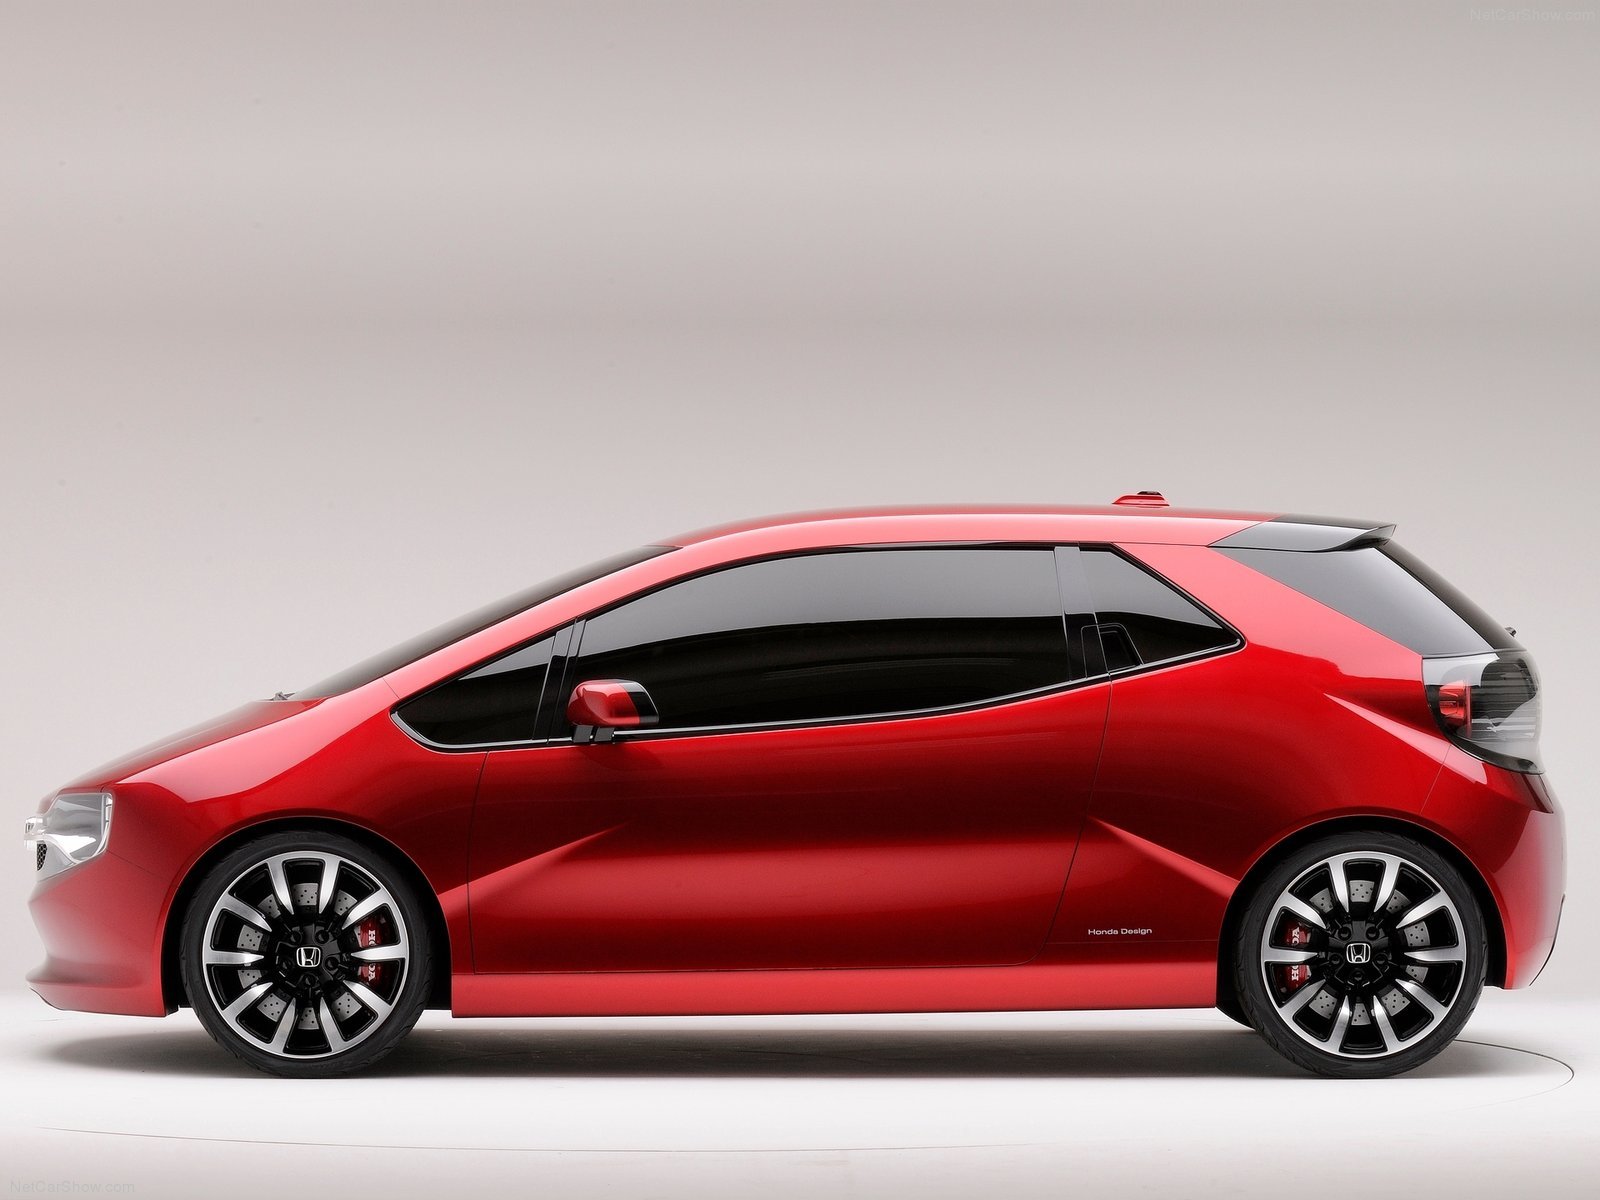 2013, Concept, Gear, Honda, Cars Wallpaper